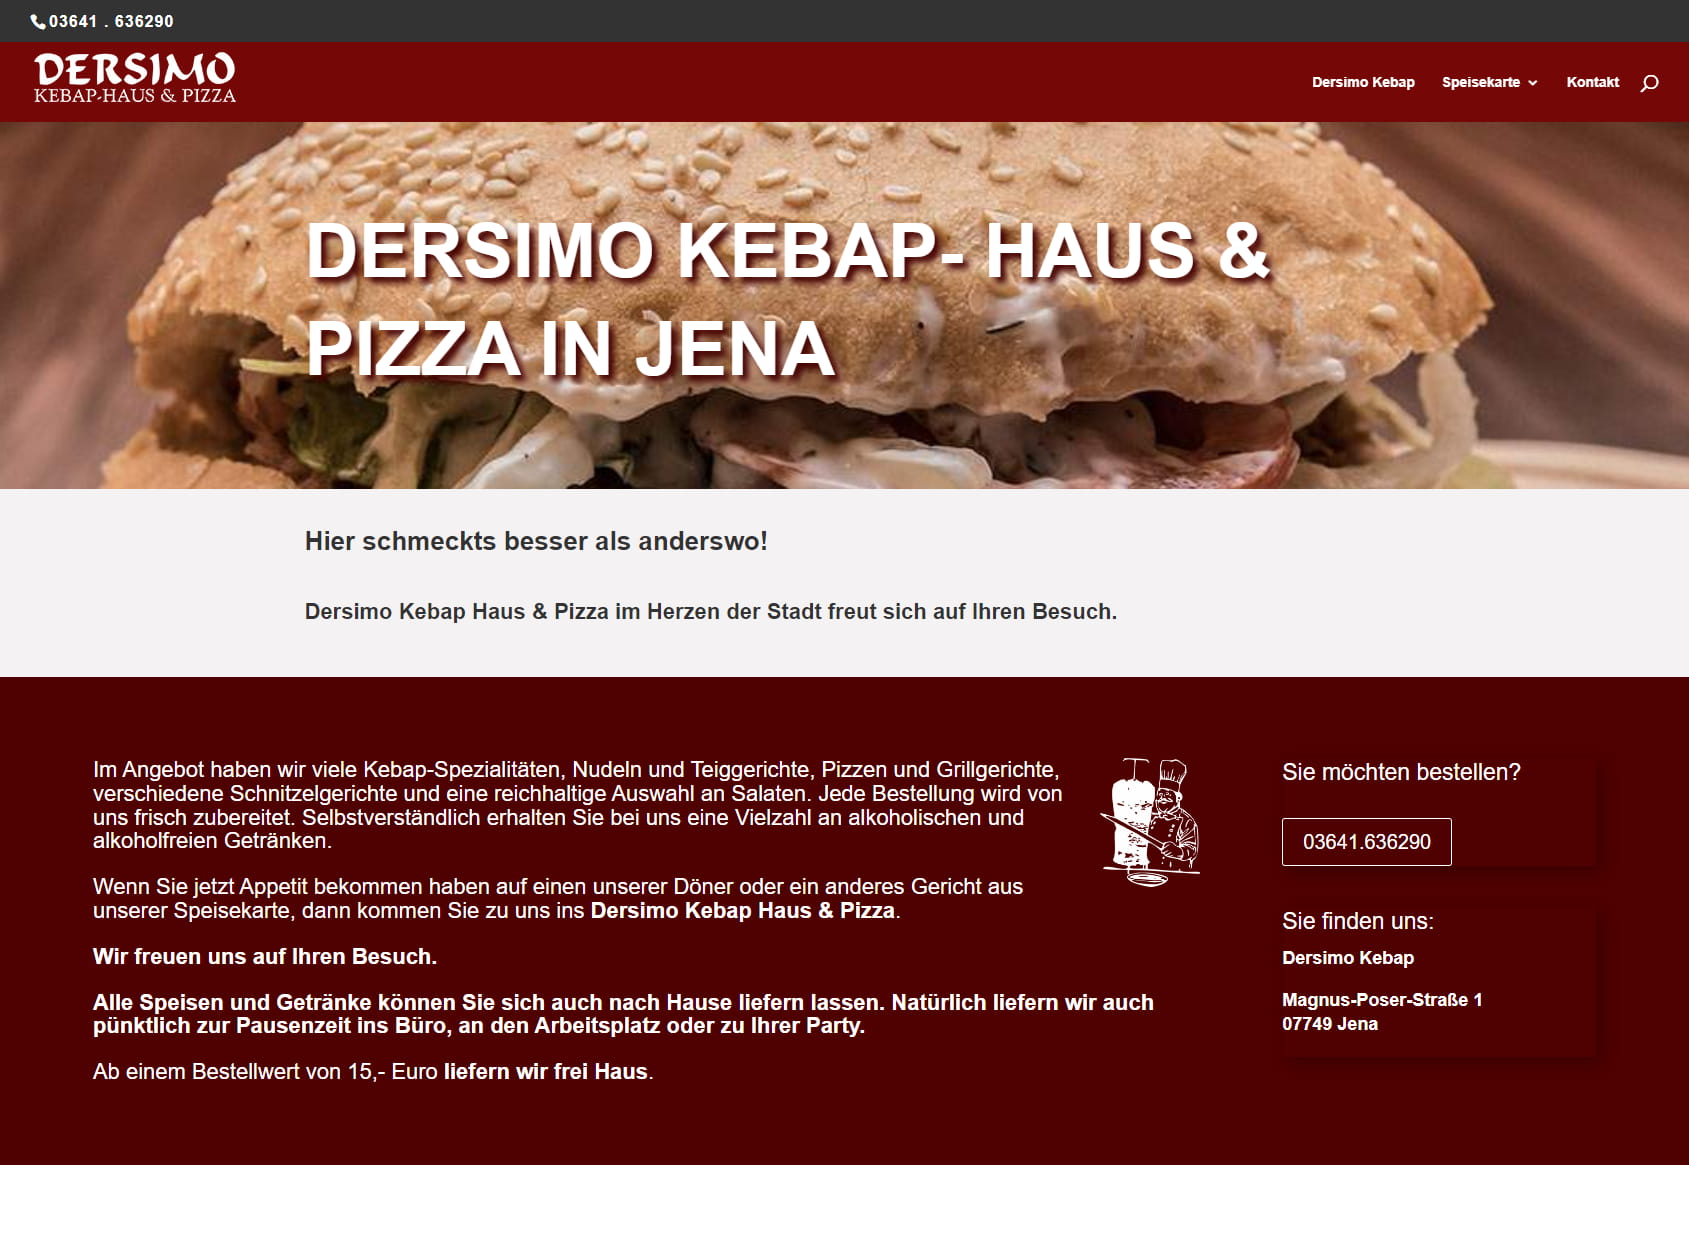 Dersimo Kebap Haus & Pizza